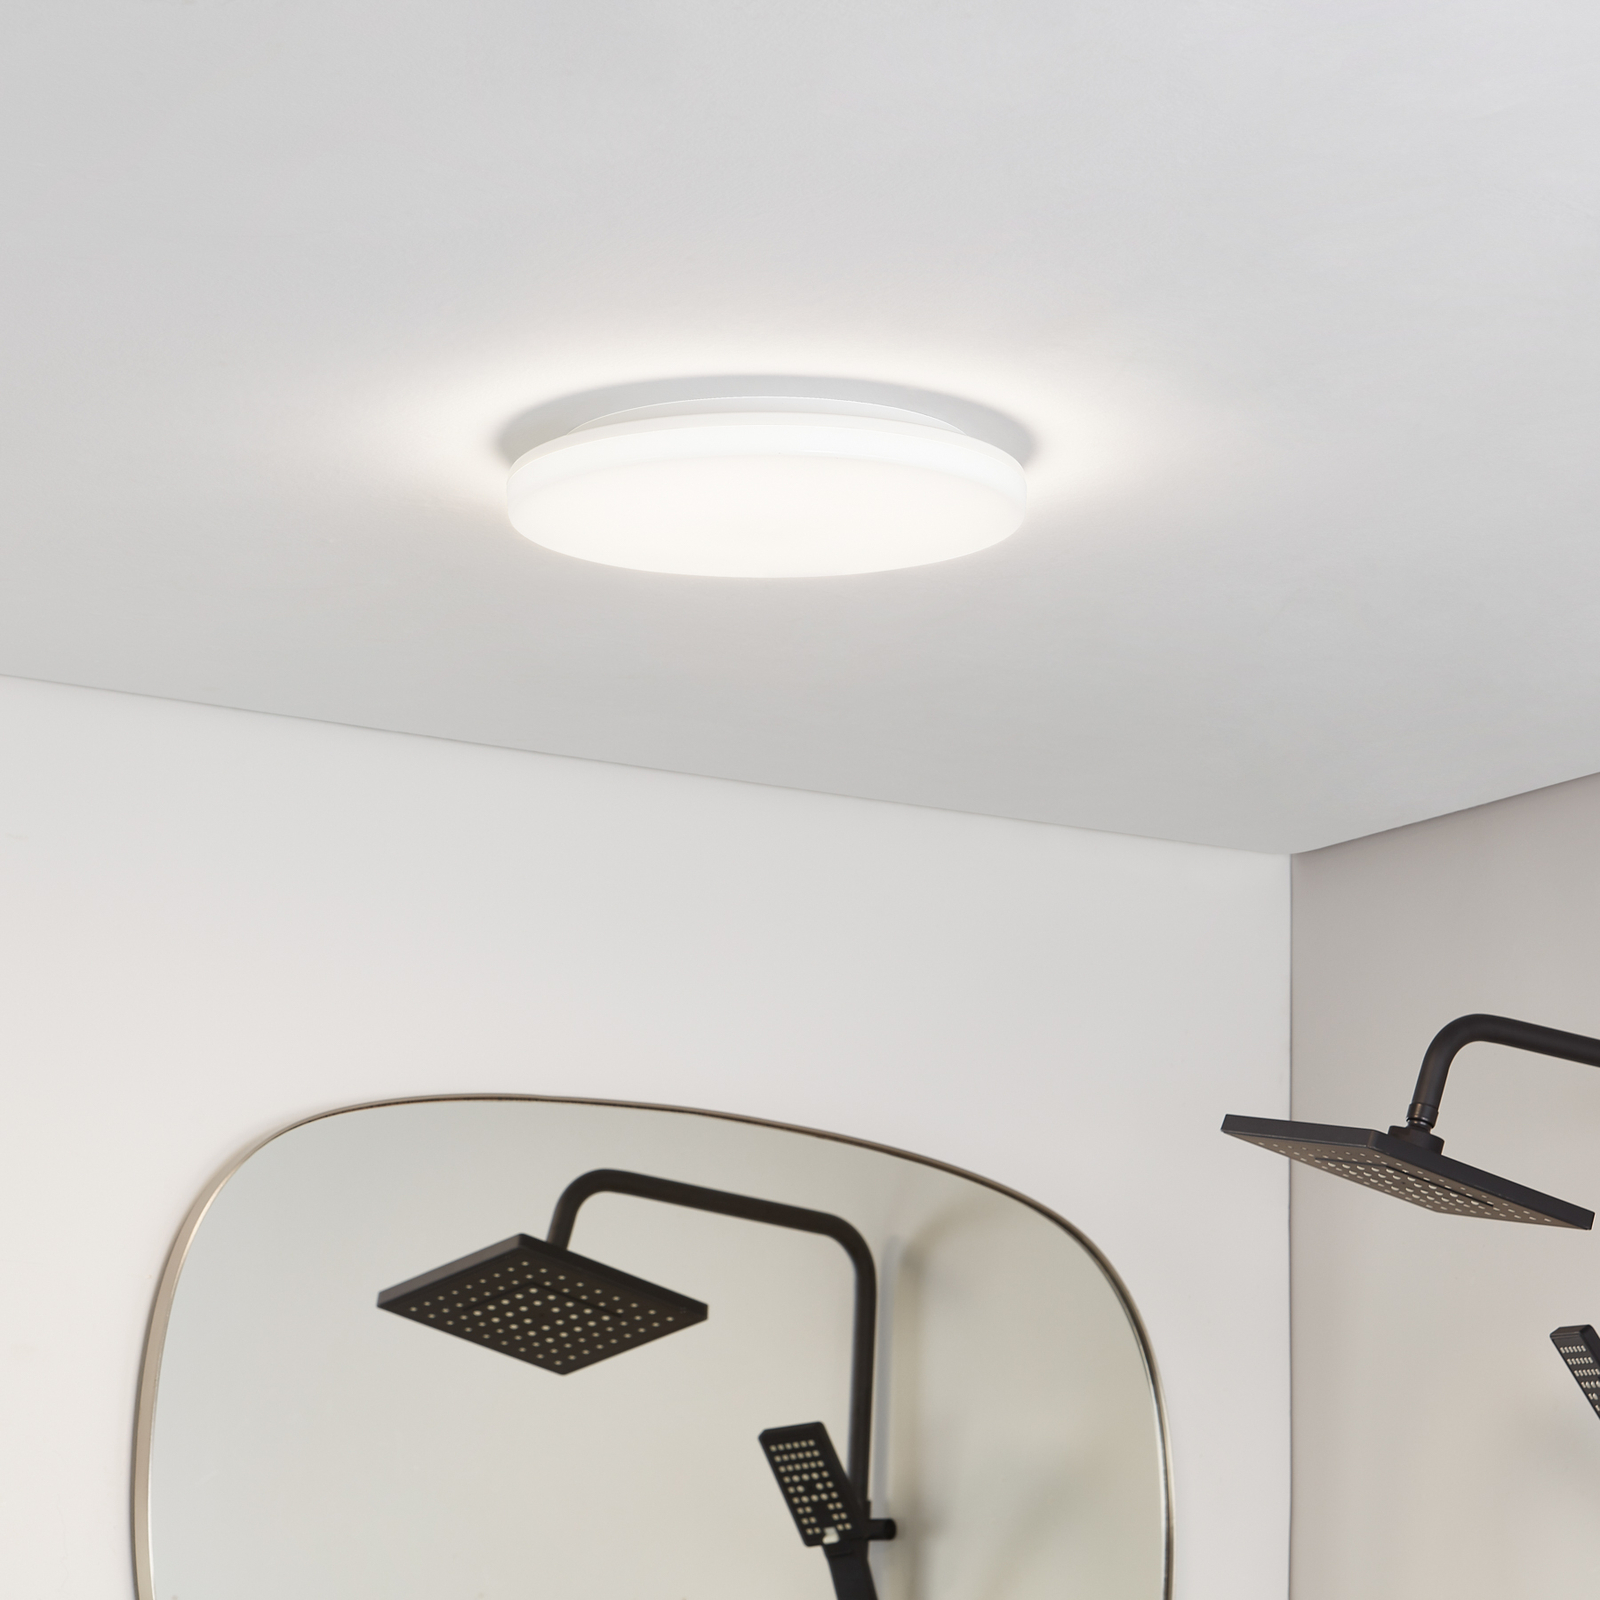 Prios Artin LED ceiling lamp, round, 33 cm